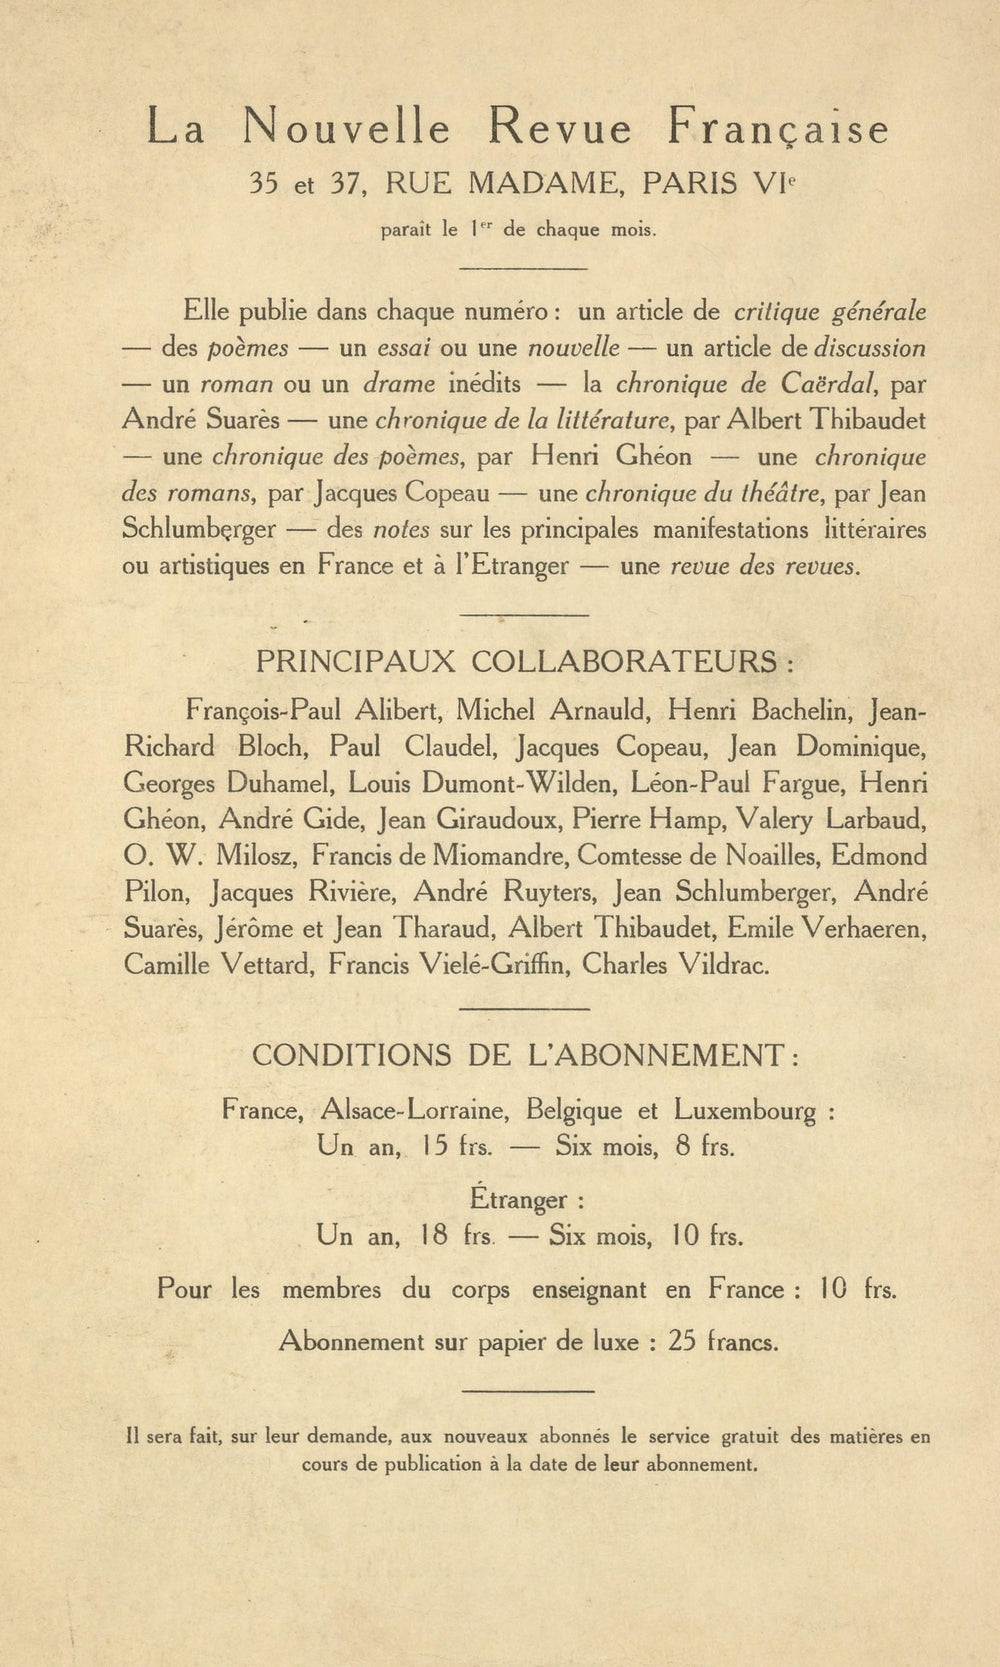 La Nouvelle Revue Française N' 53 (Mai 1913)